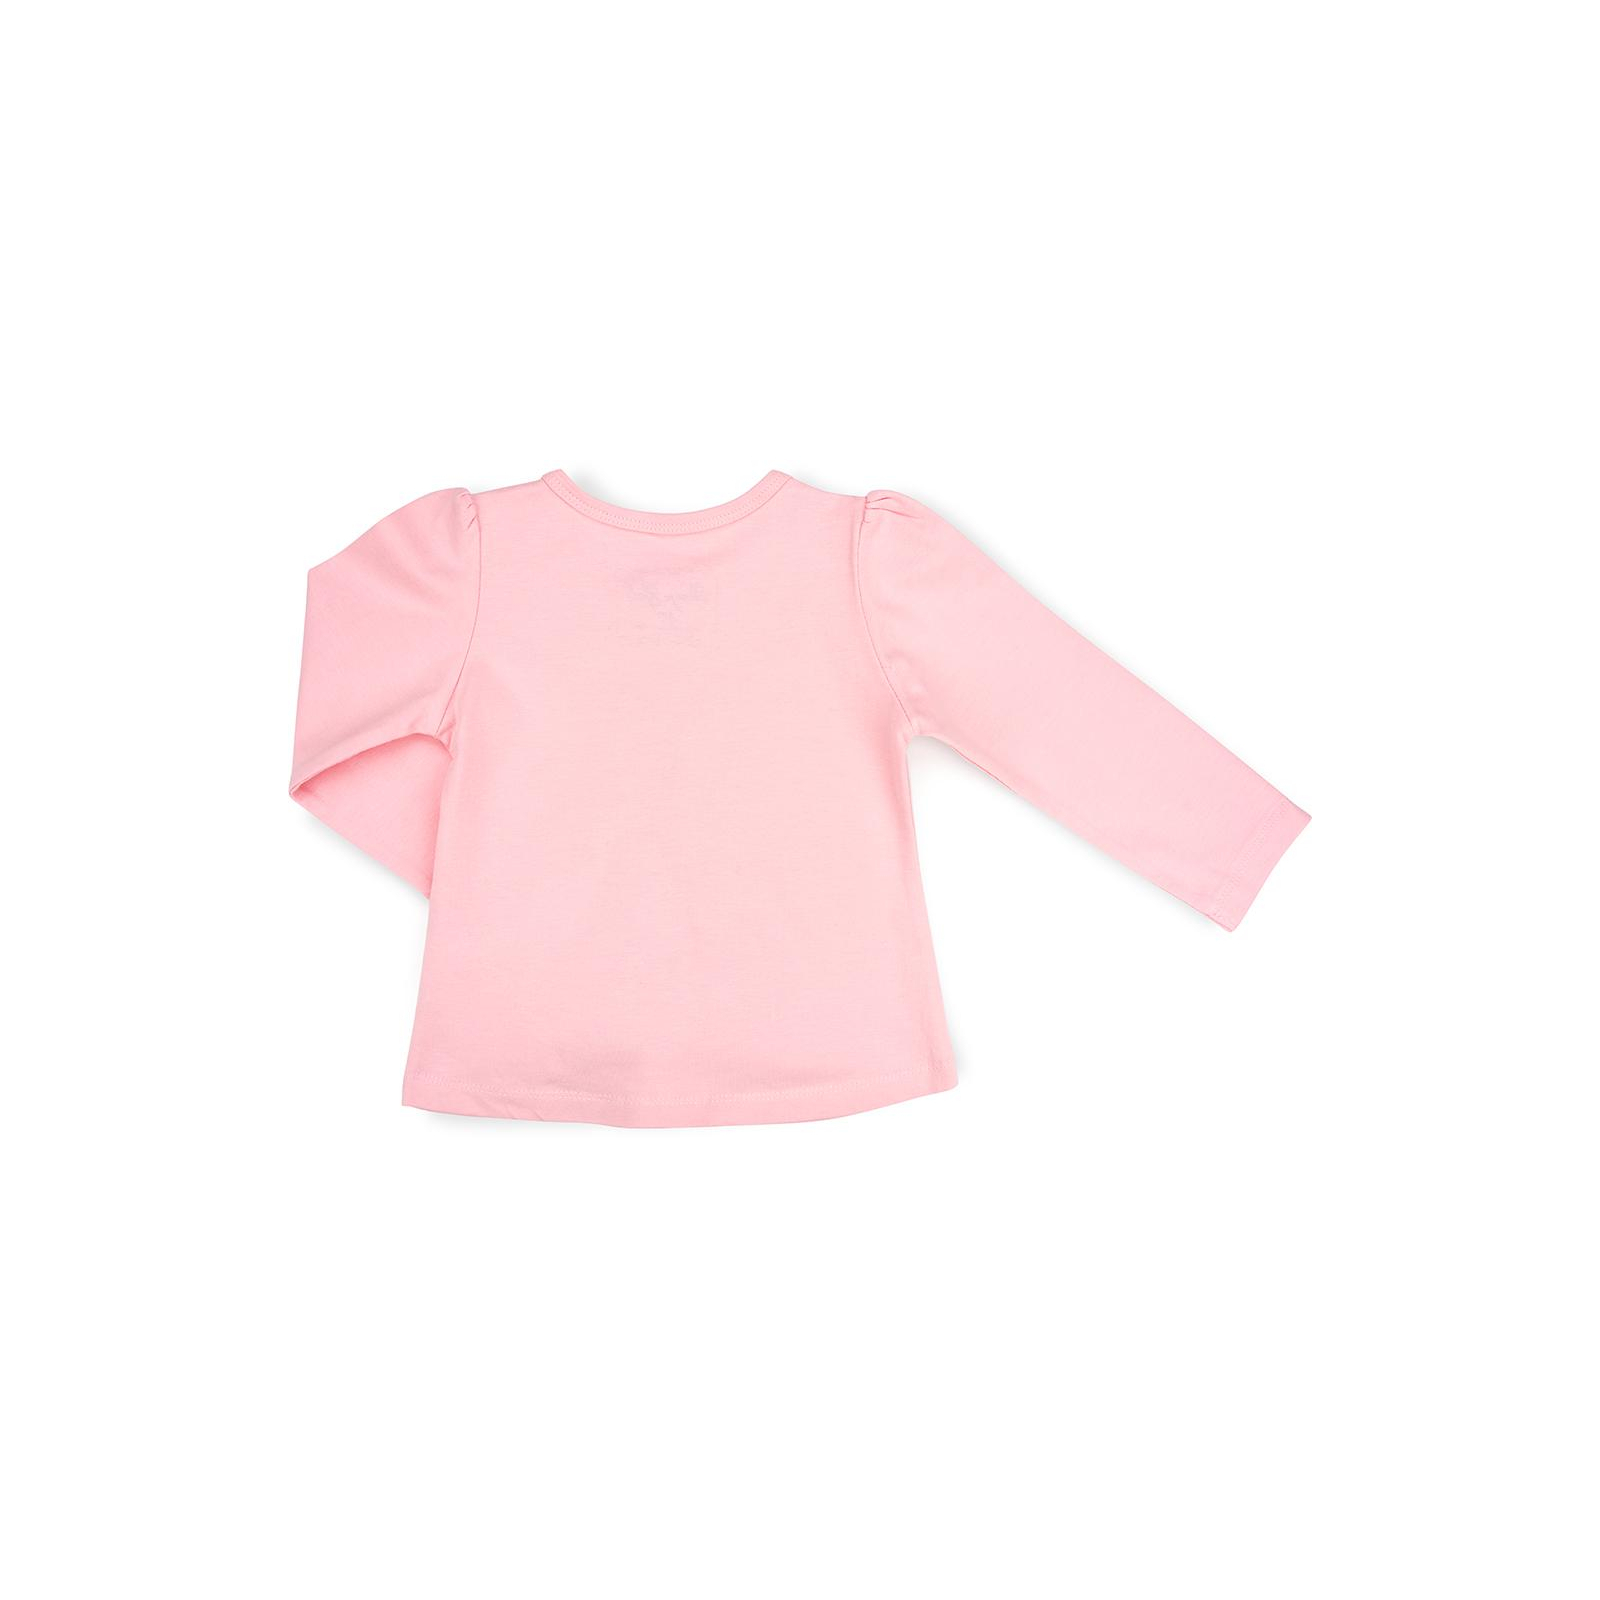 Набір дитячого одягу Breeze с зайчиком (10038-80G-pinkgray) зображення 5